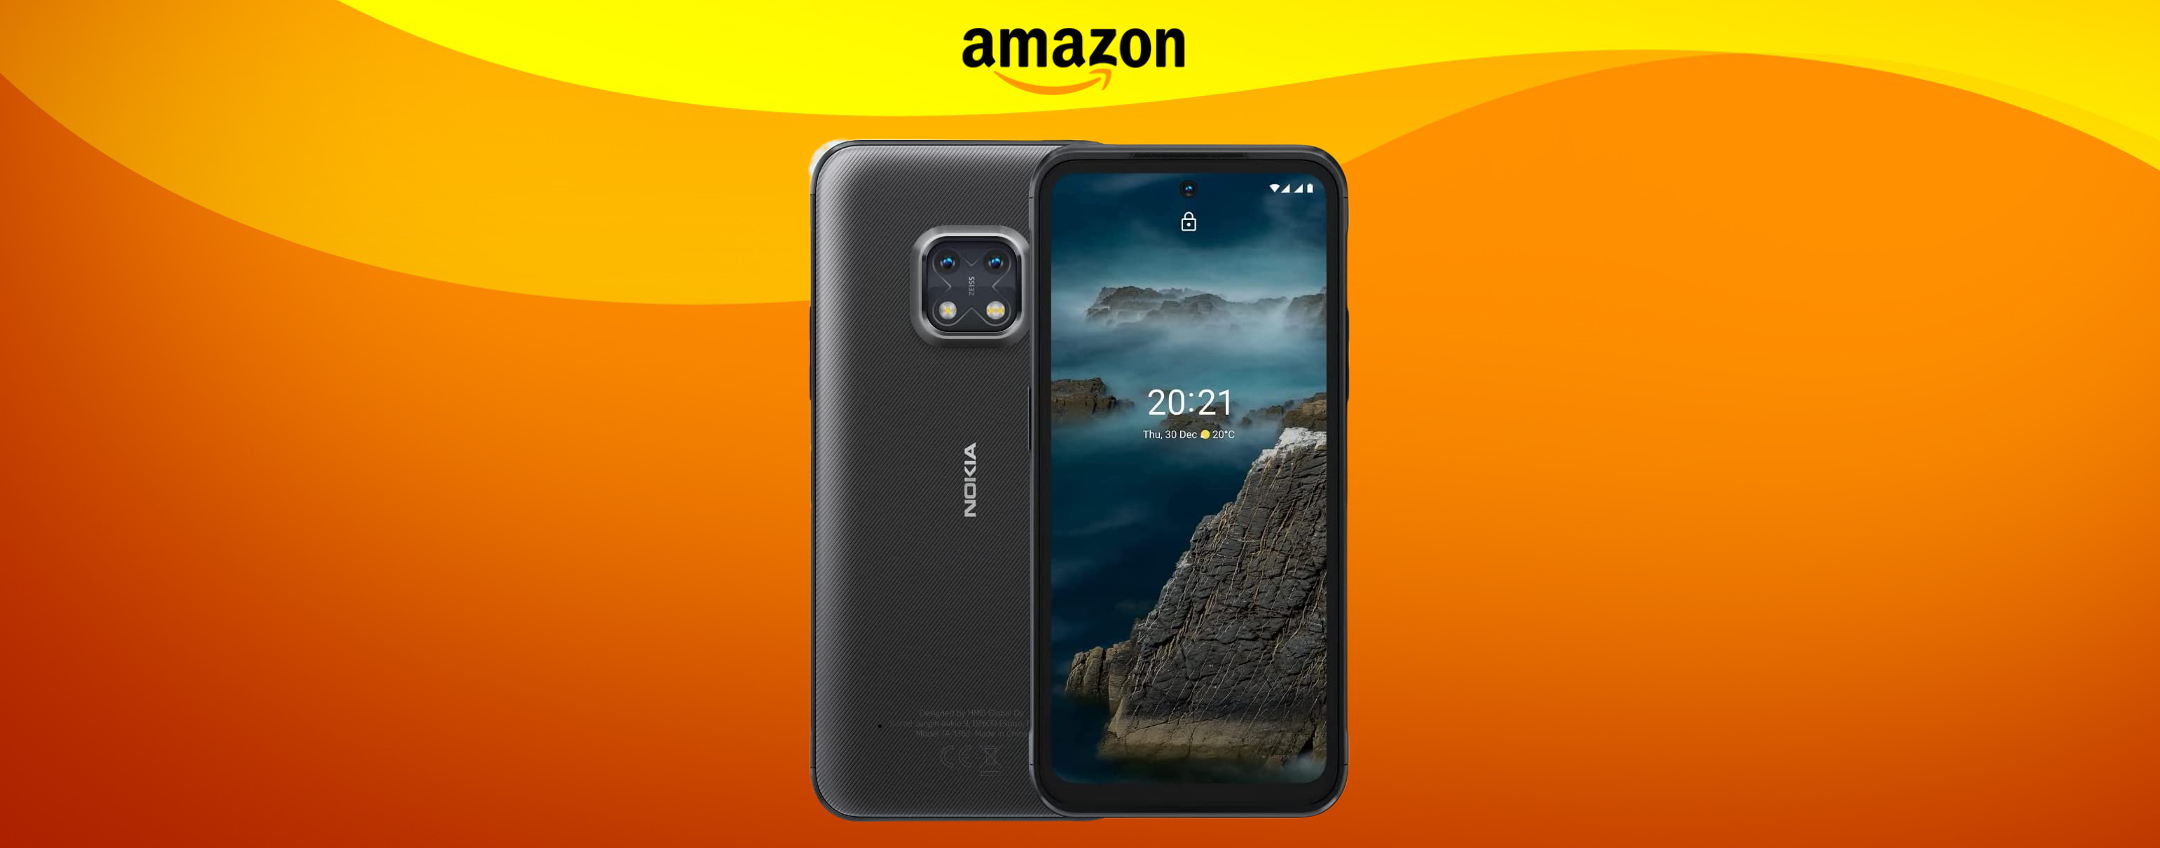 Smartphone Nokia SUPER RESISTENTE: ottimo sconto su Amazon (-87€)